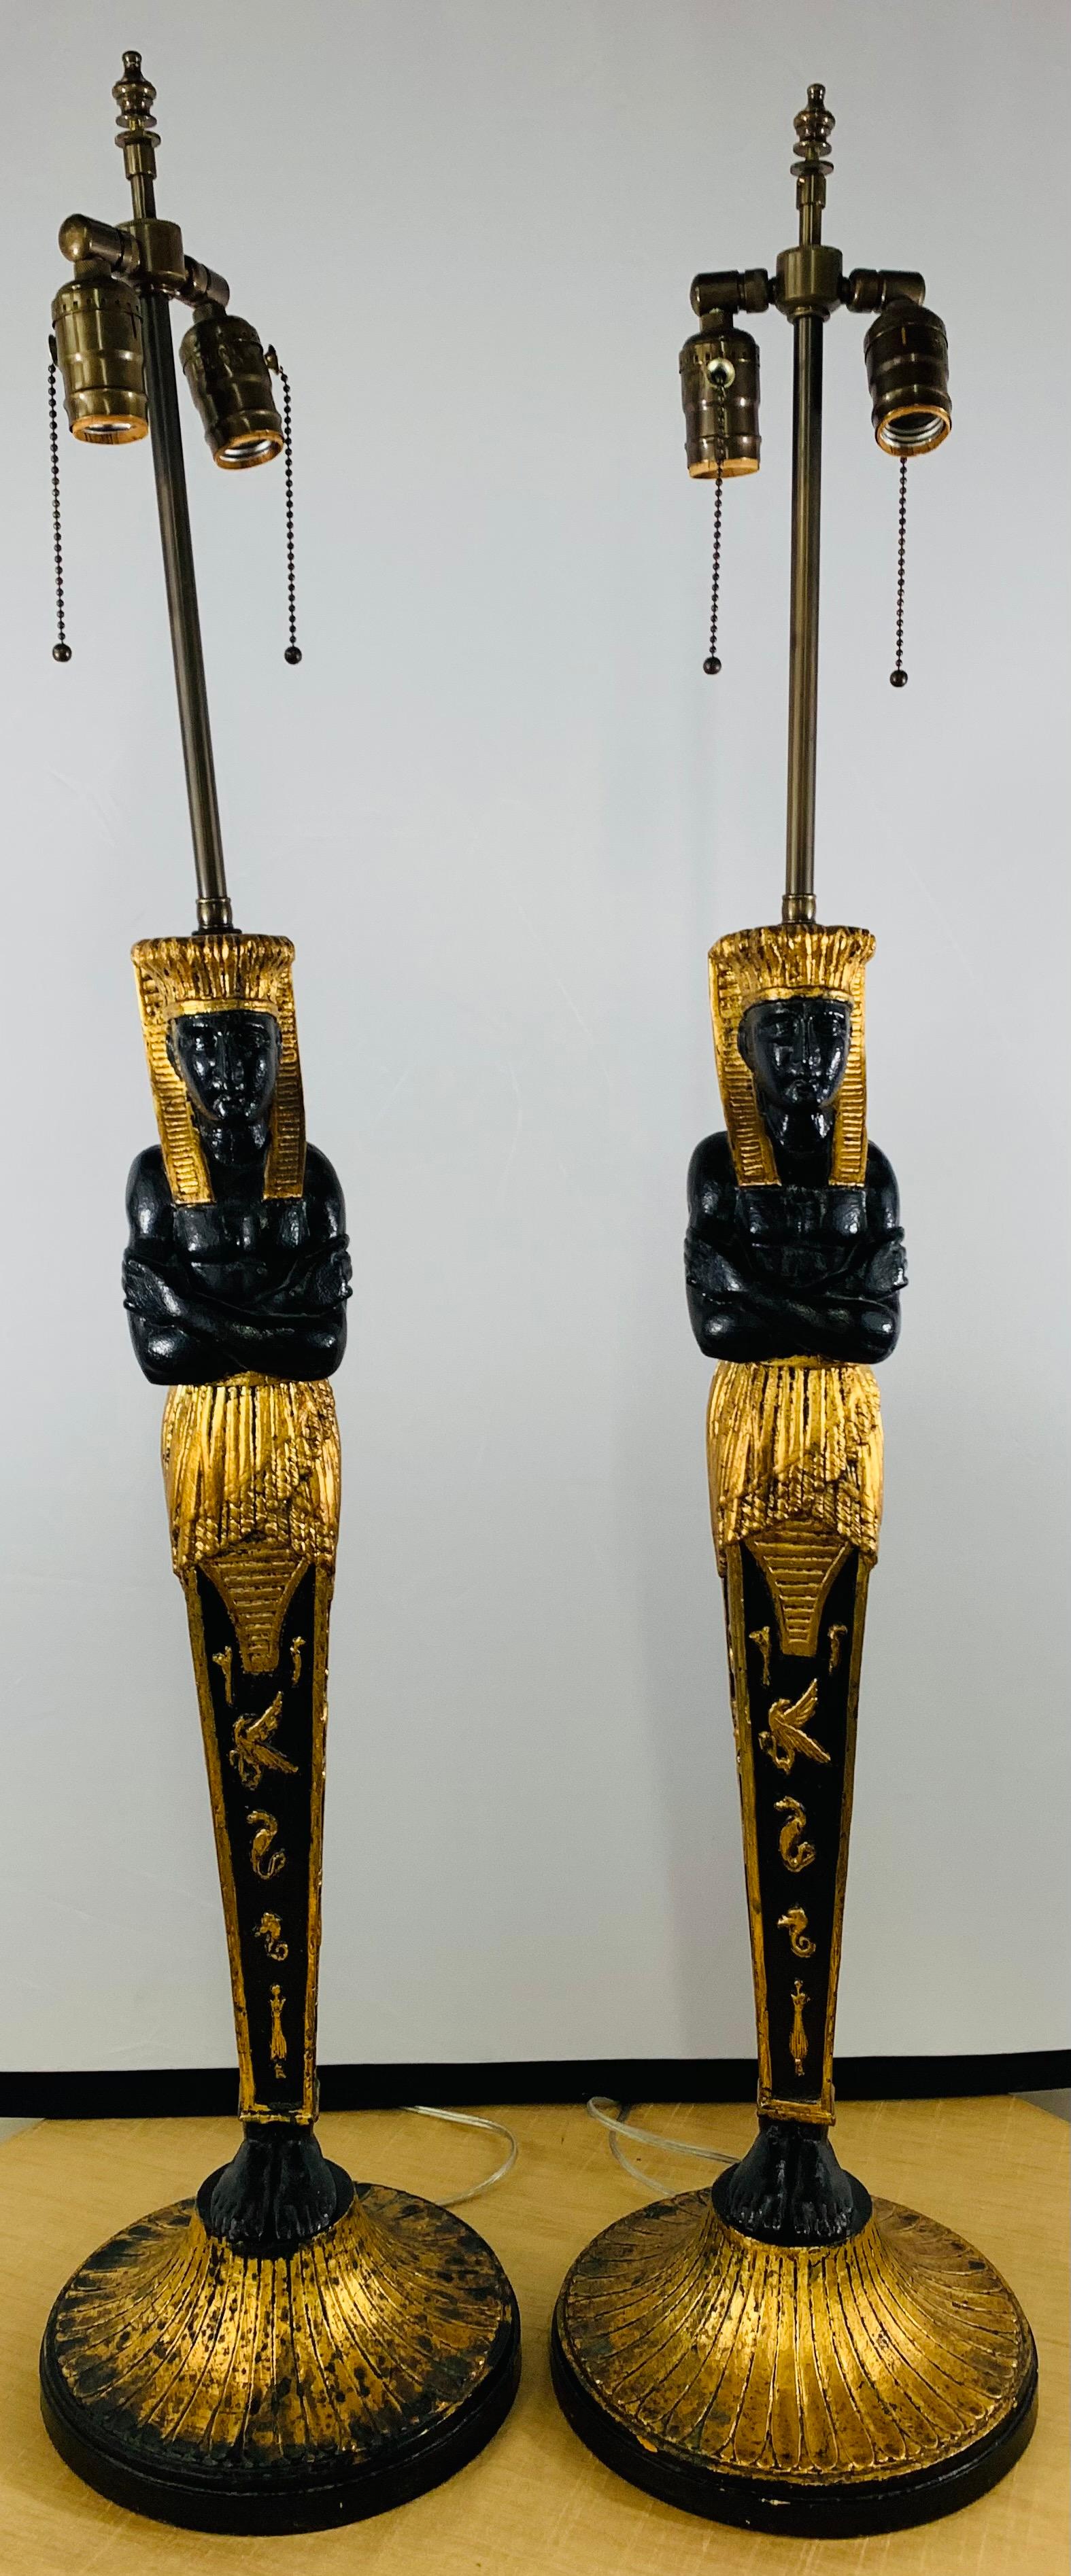 Une étonnante paire de lampes de table en ébène des années 1970 en forme de pharaon finement sculpté à la main et décoré à l'or. Les lampes Pharaon noires et or présentent des détails étonnants et des lettres Amarna (lettres égyptiennes anciennes).